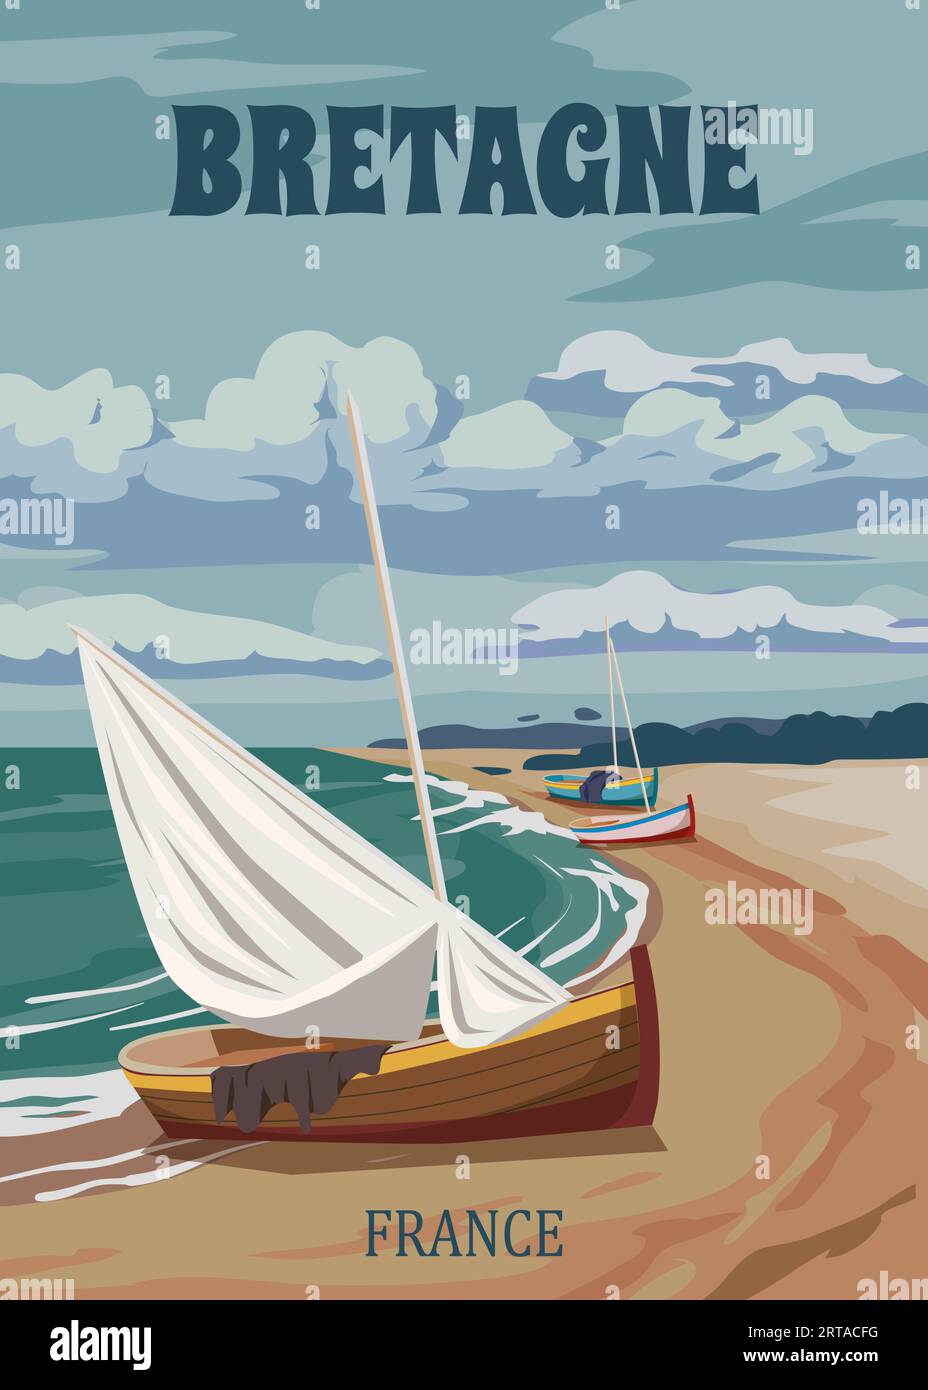 Poster voyage Bretagne France, voilier d'époque, paysage marin sable bord de mer paysage Illustration de Vecteur